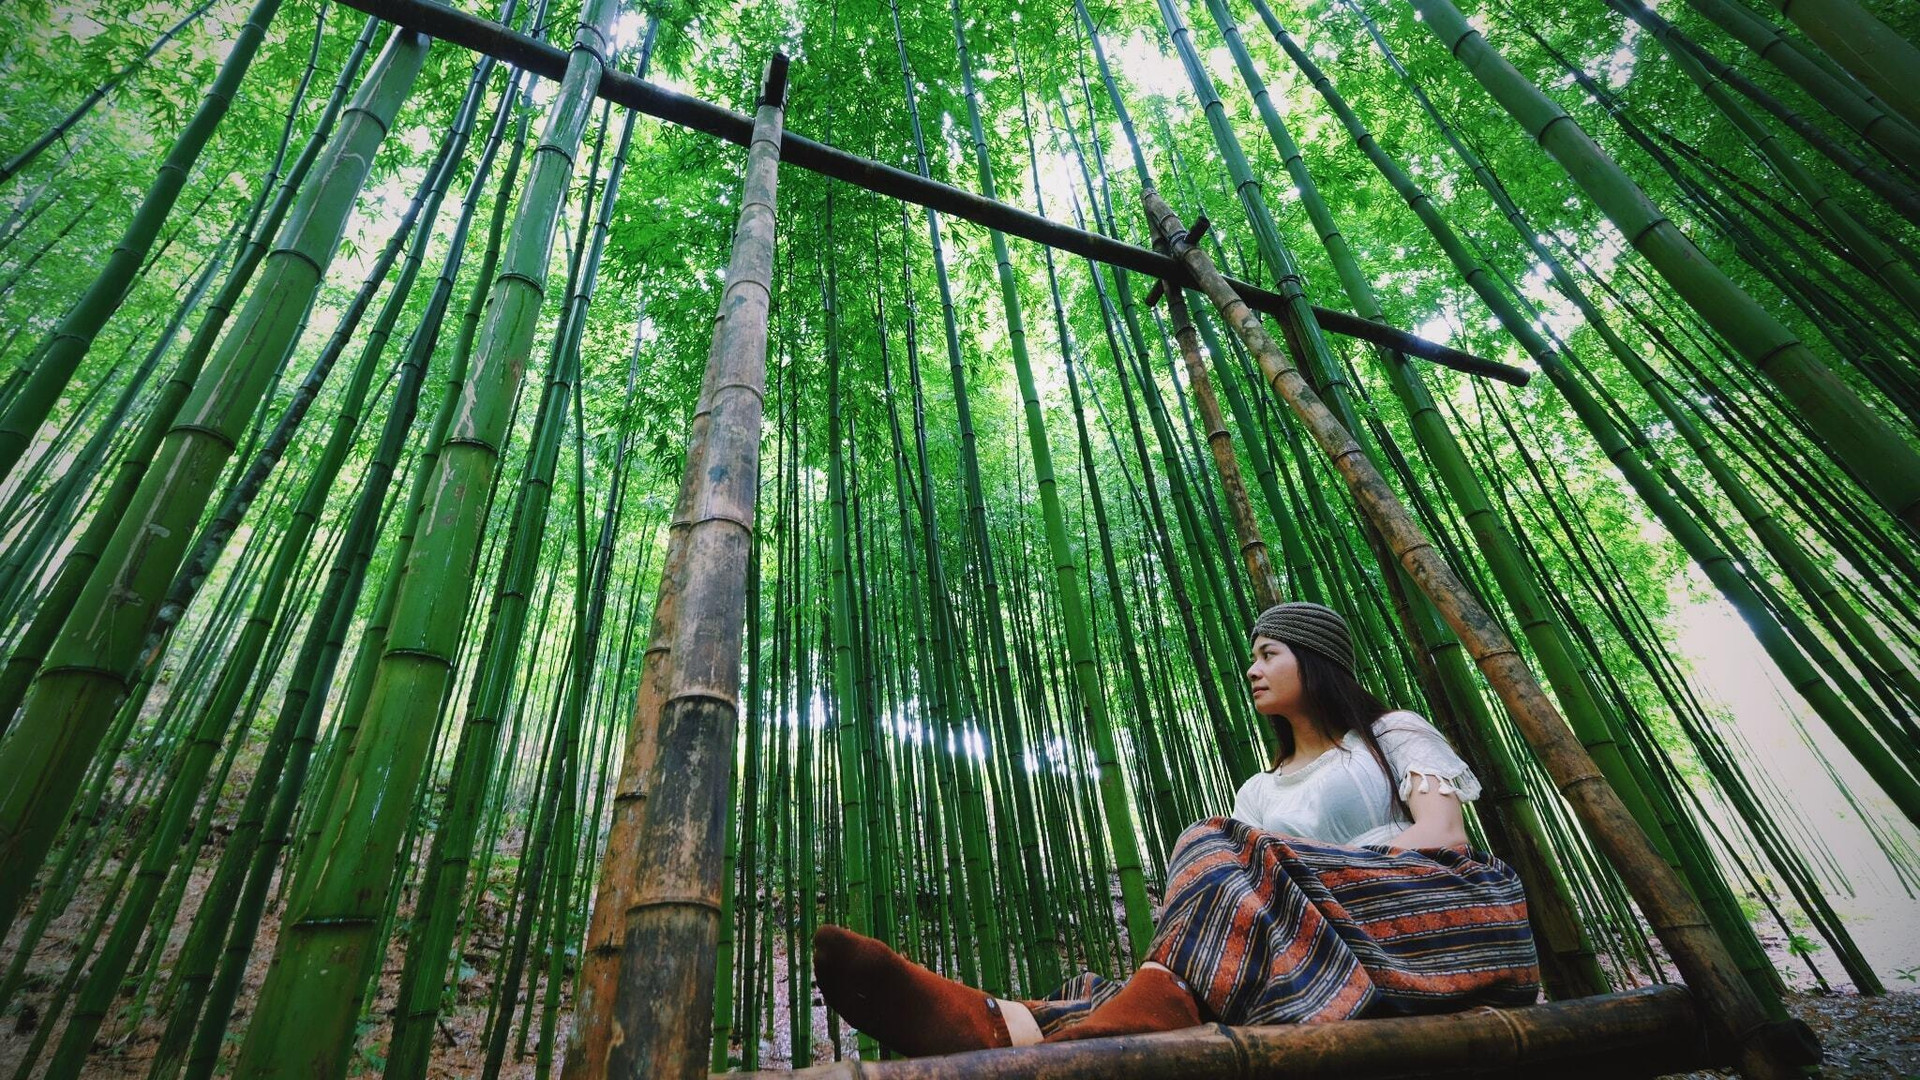 Phát hiện rừng trúc kỳ vĩ đẹp hơn cả cảnh phim kiếm hiệp ngay tại Việt Nam - 11